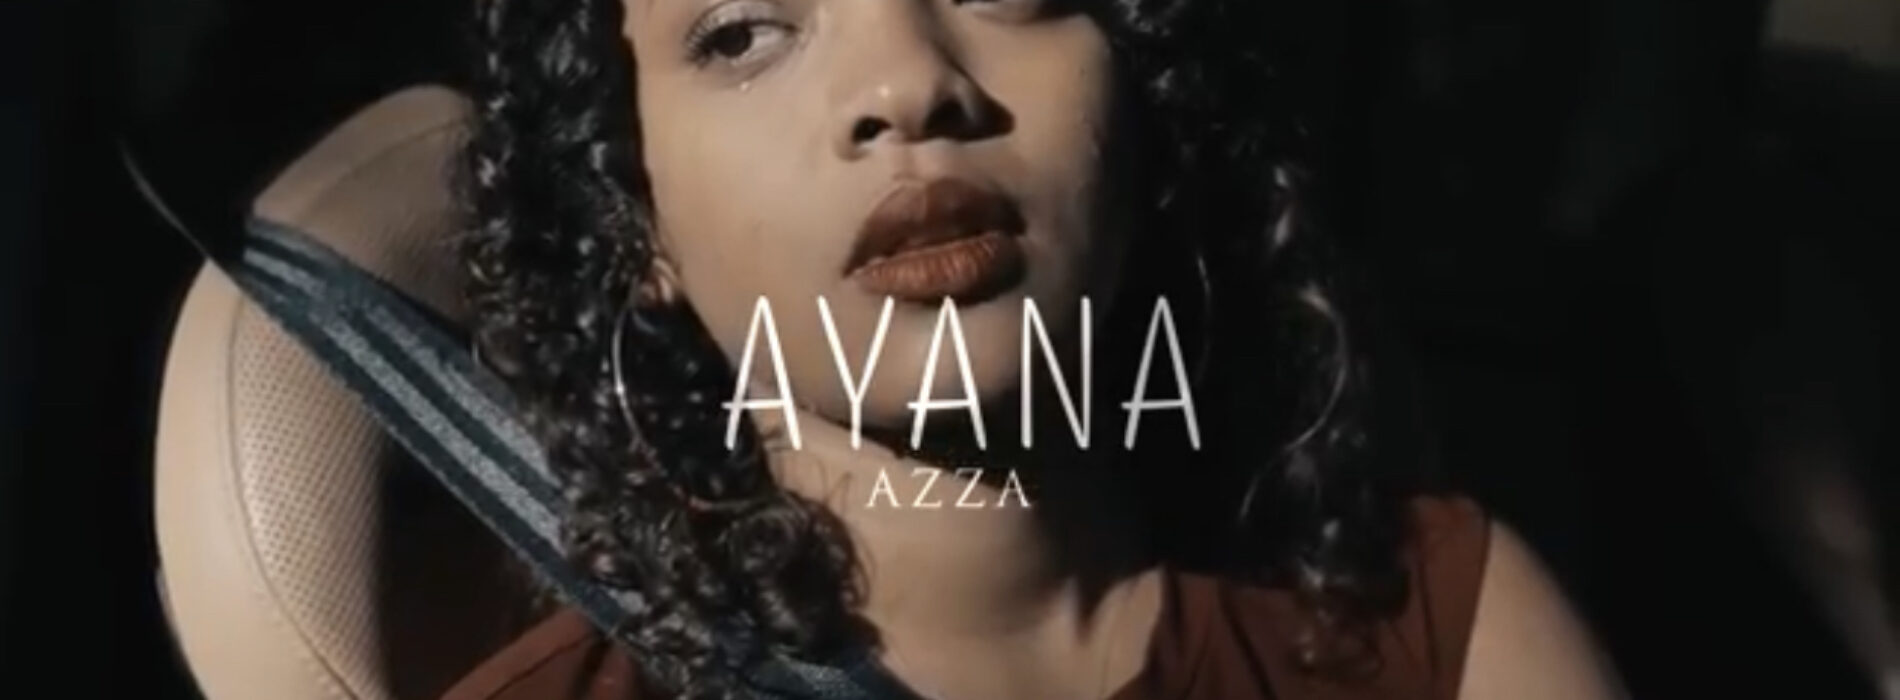 Azza – « Ayana » ( clip officiel ) – juillet 2022